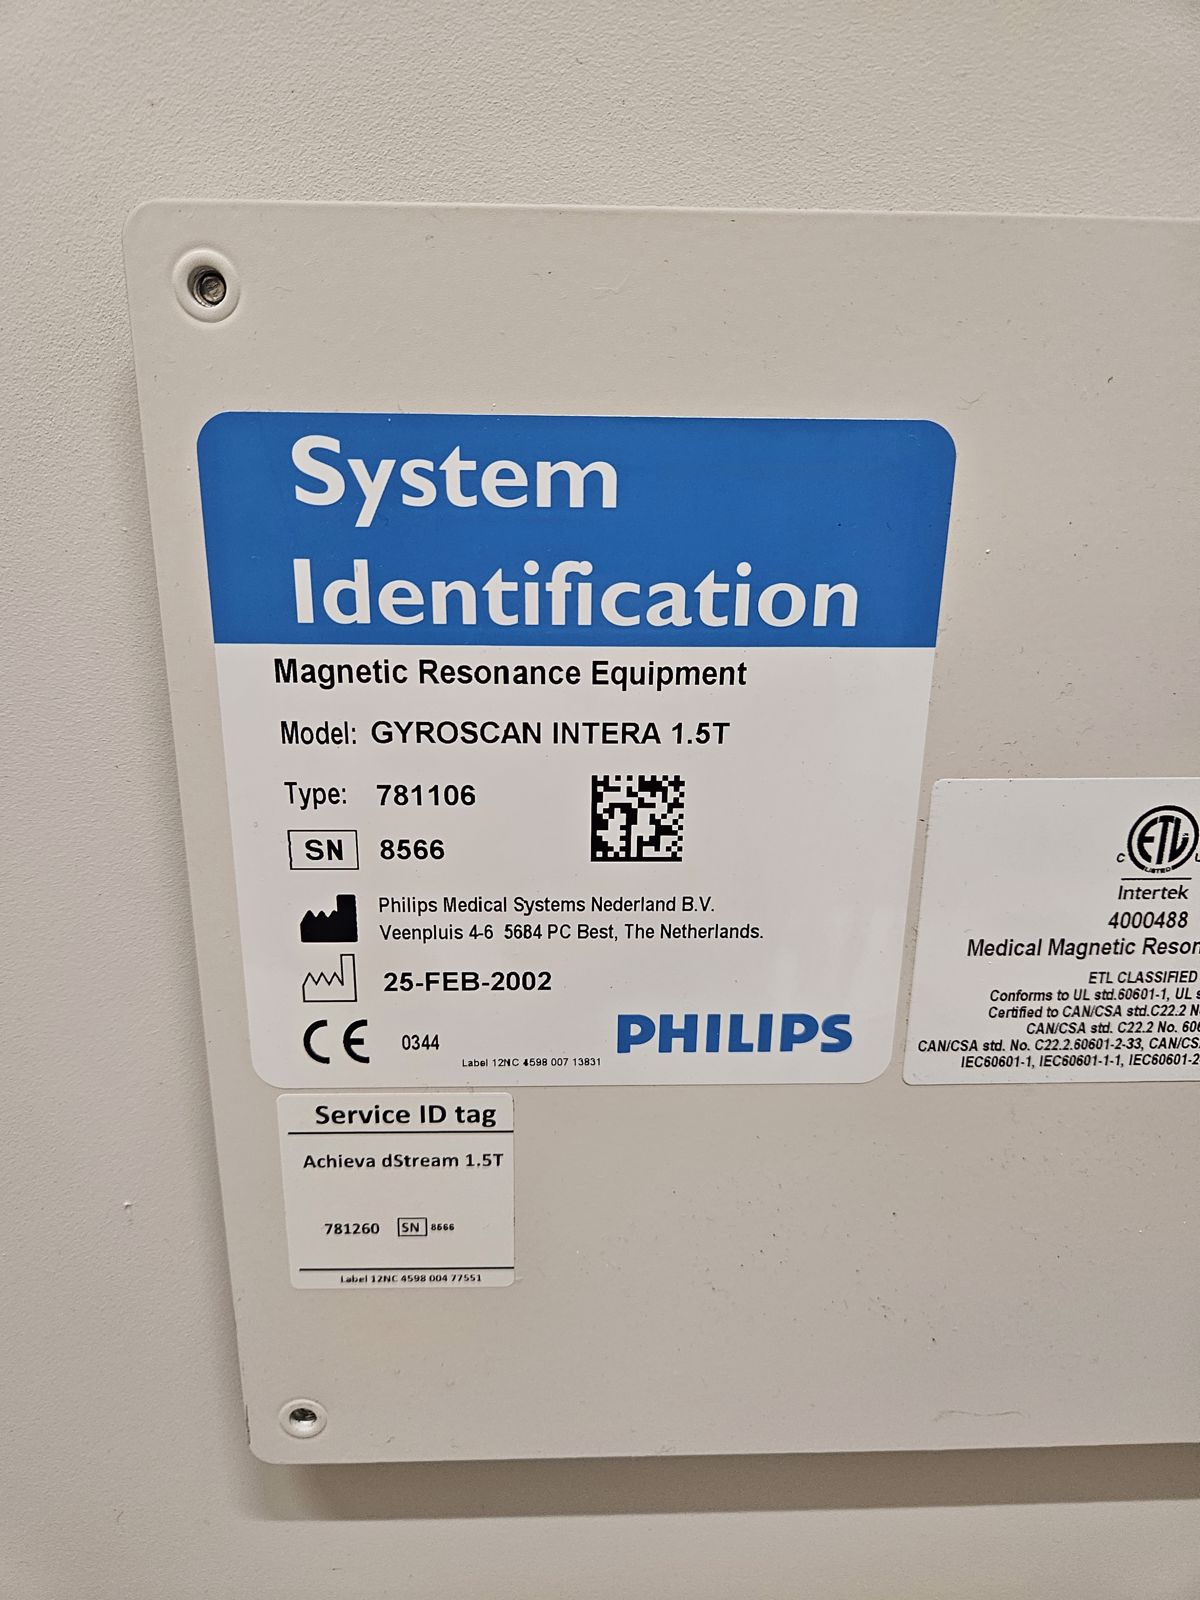 Philips Achieva 1.5T dStream - 2002